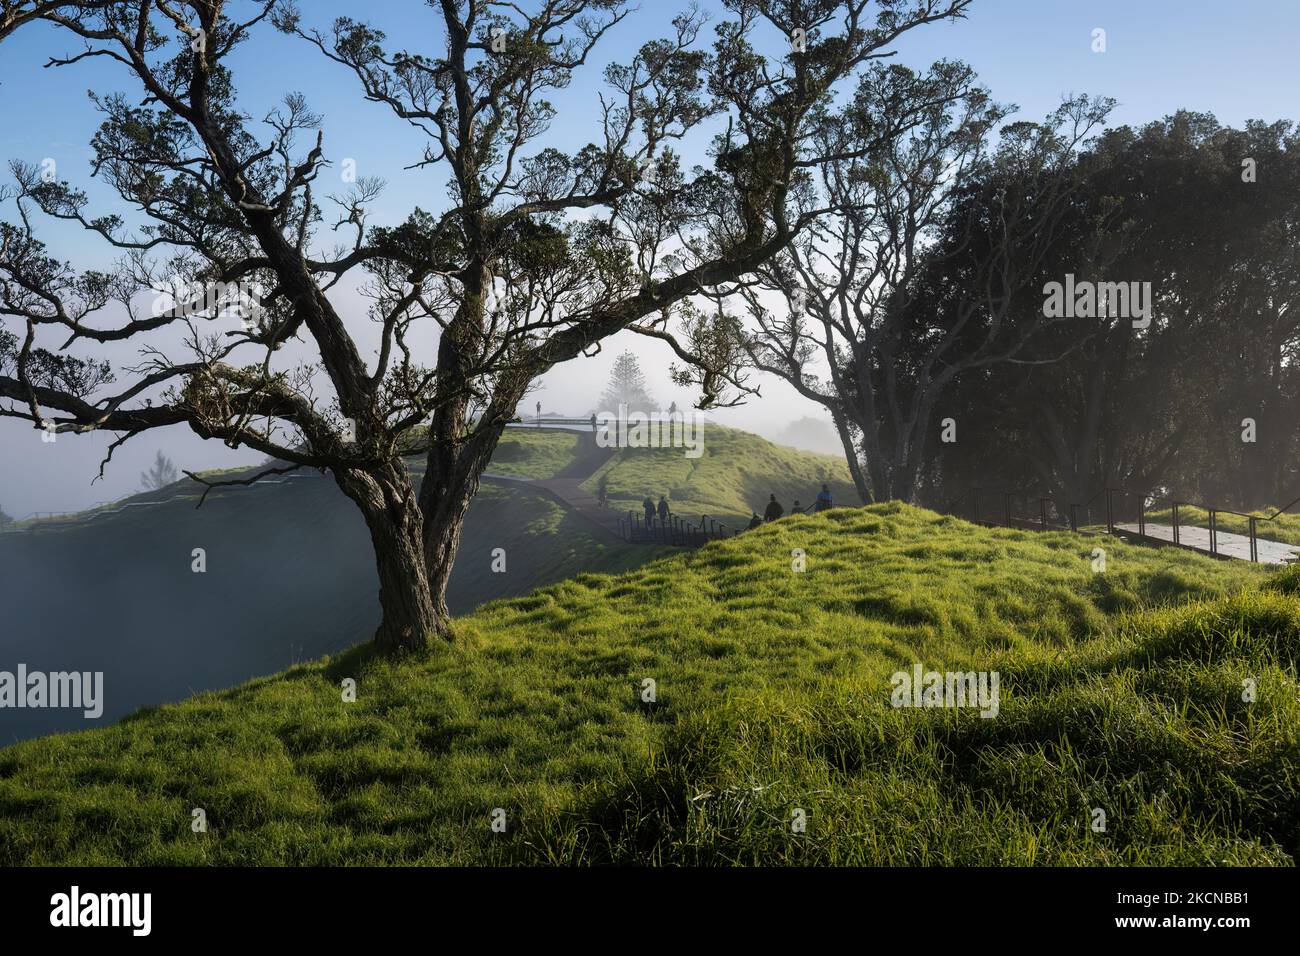 Árboles en la niebla en la cumbre del Monte Eden, gente indistinca caminando en la distancia, Auckland Foto de stock